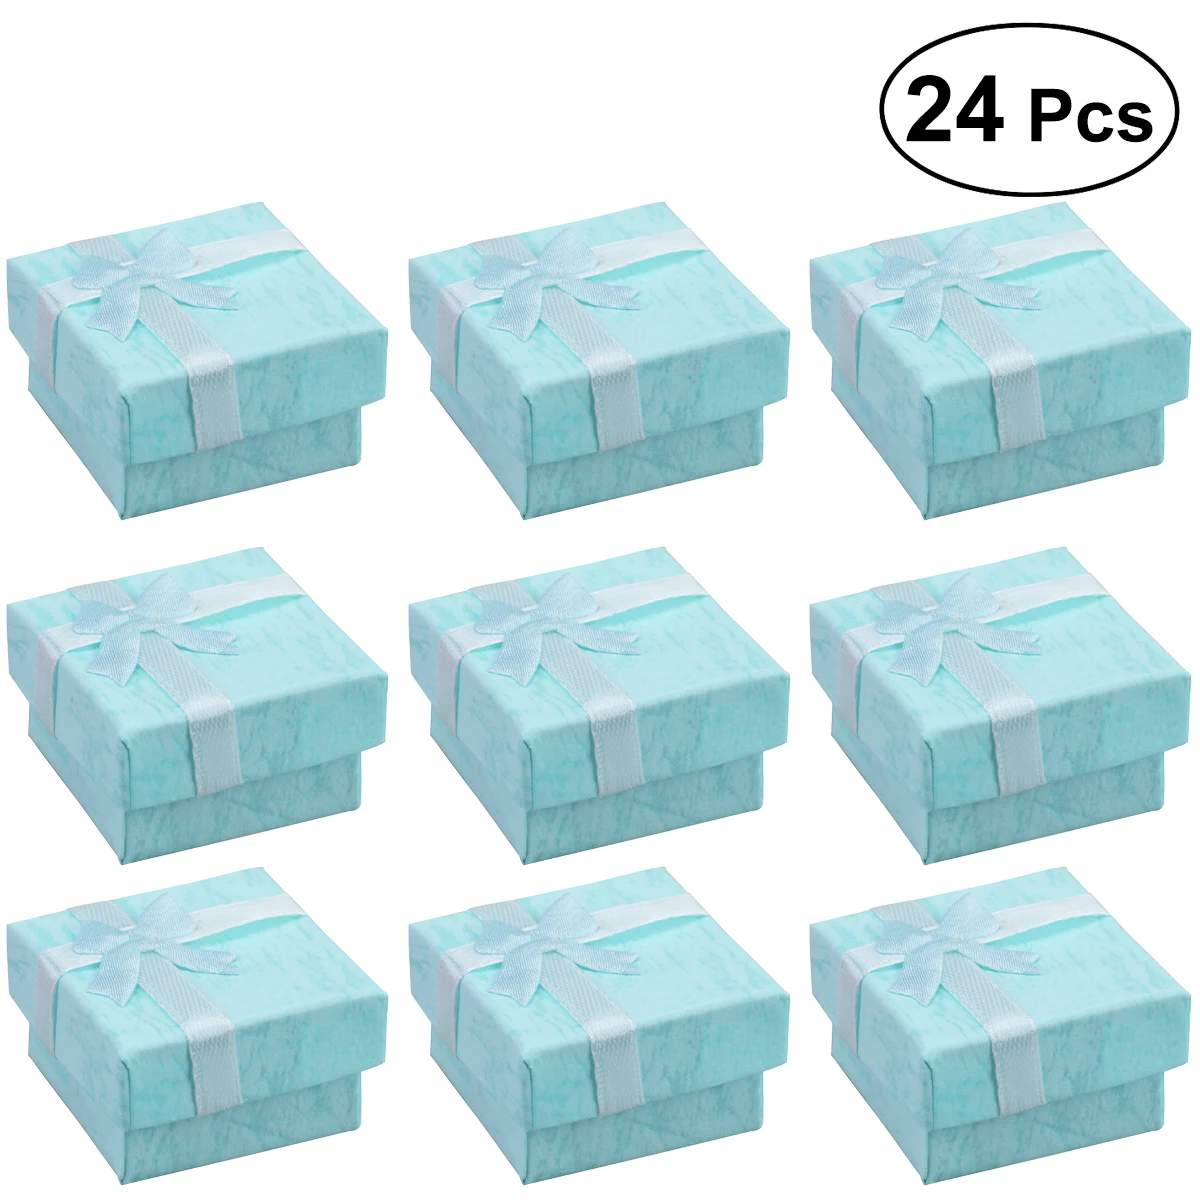 24 шт ювелирные изделия органайзеры коробки для хранения подарков для серьги браслет ожерелье - Цвет: Синий